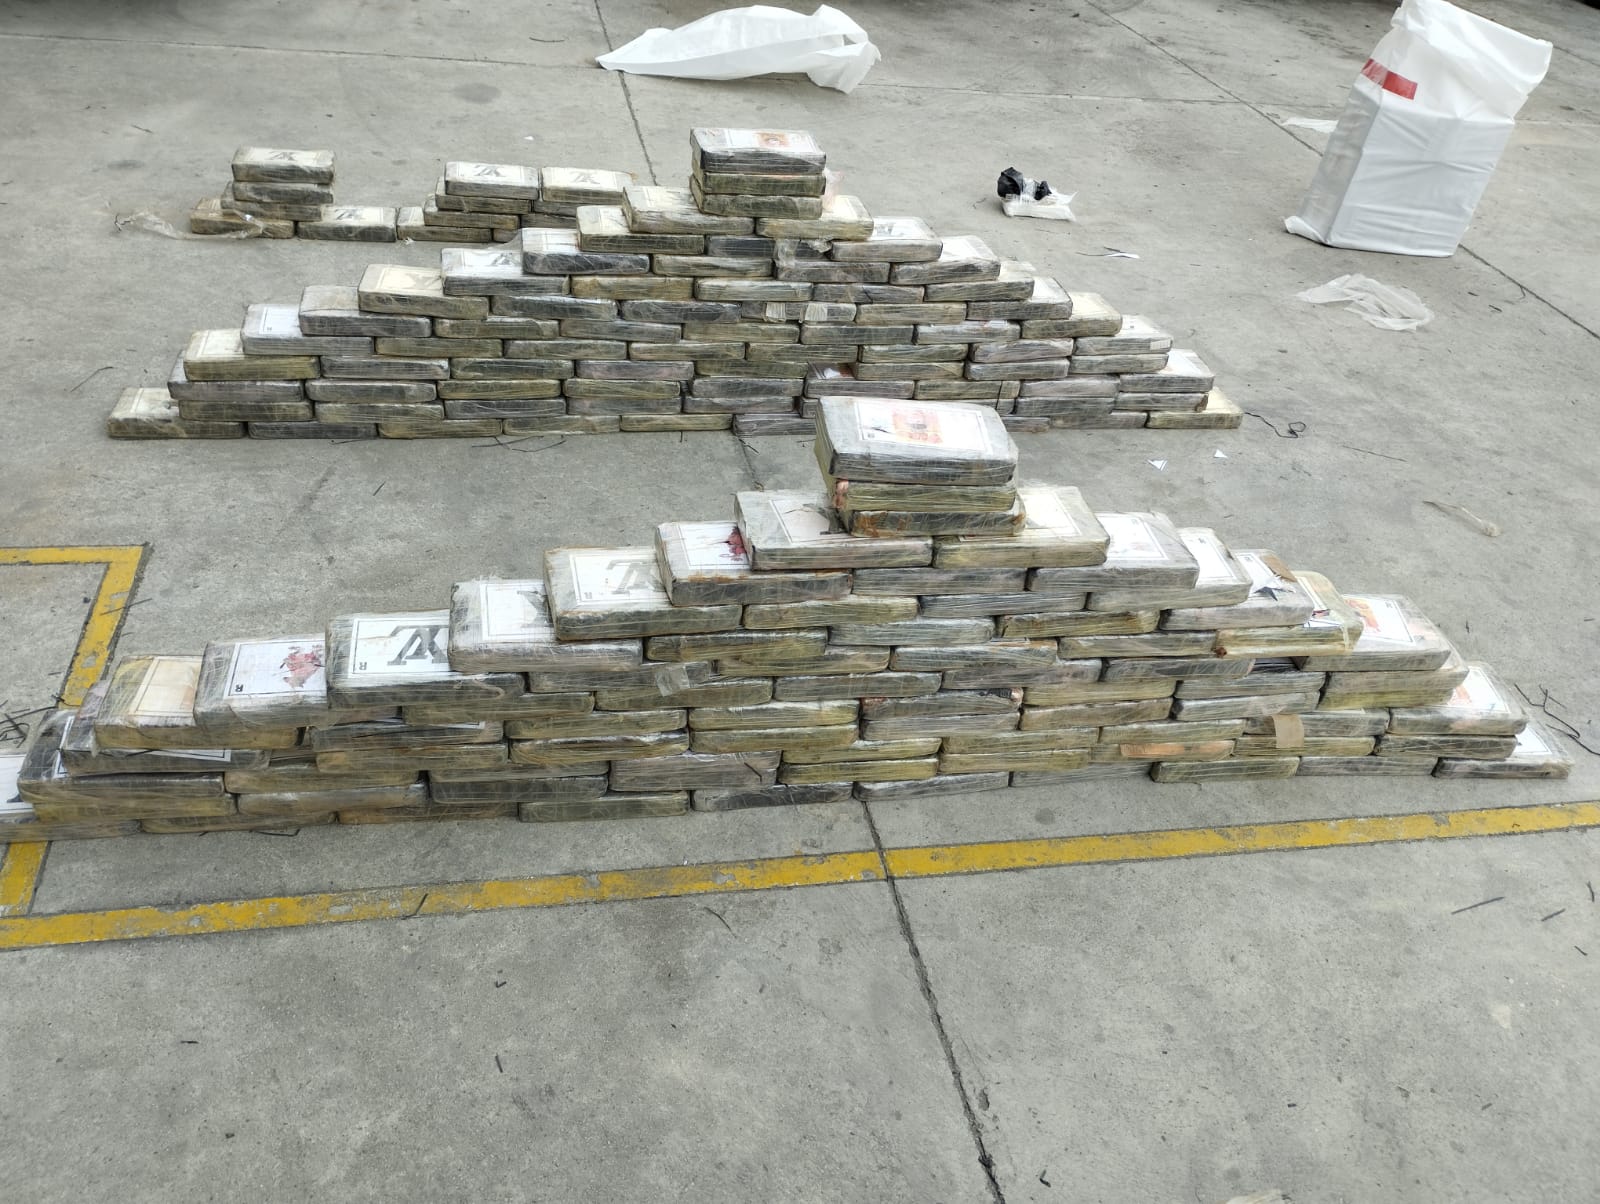 La droga que se envía desde Ecuador a Estados Unidos y Europa generalmente está oculta en los contenedores de exportación que parten de los puertos marítimos del país. (Policía Nacional/ Archivo)